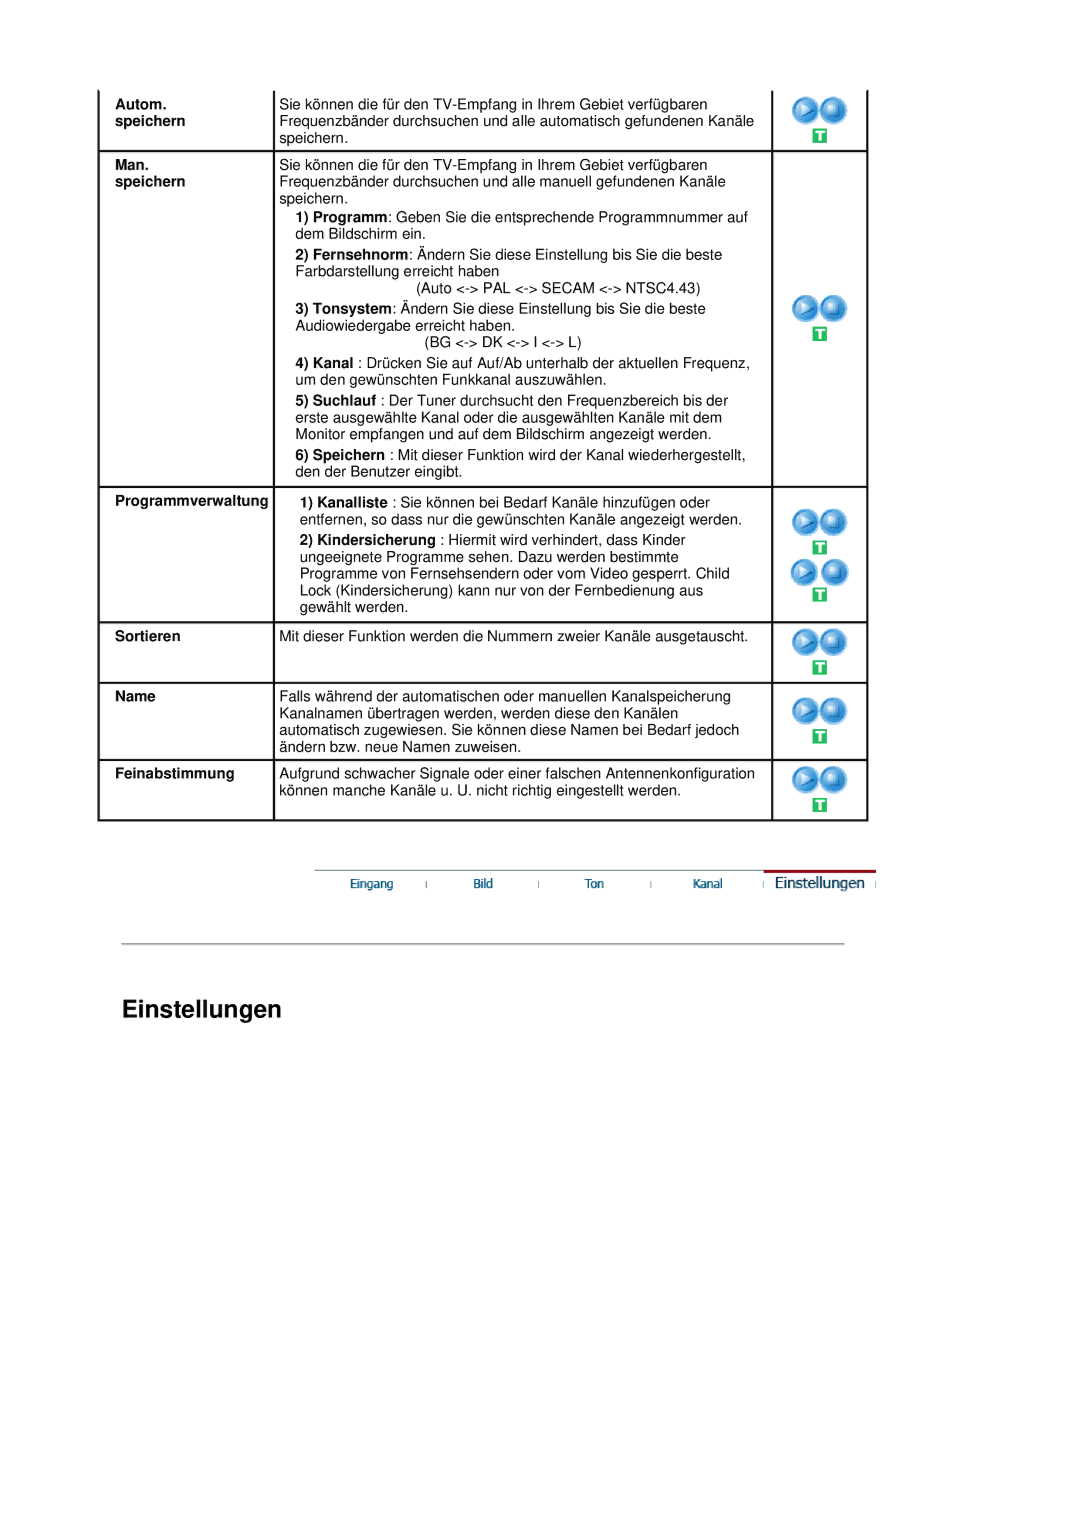 Samsung LS19DOVSS/EDC manual Autom, Speichern, Man, Programmverwaltung, Sortieren, Name, Feinabstimmung 